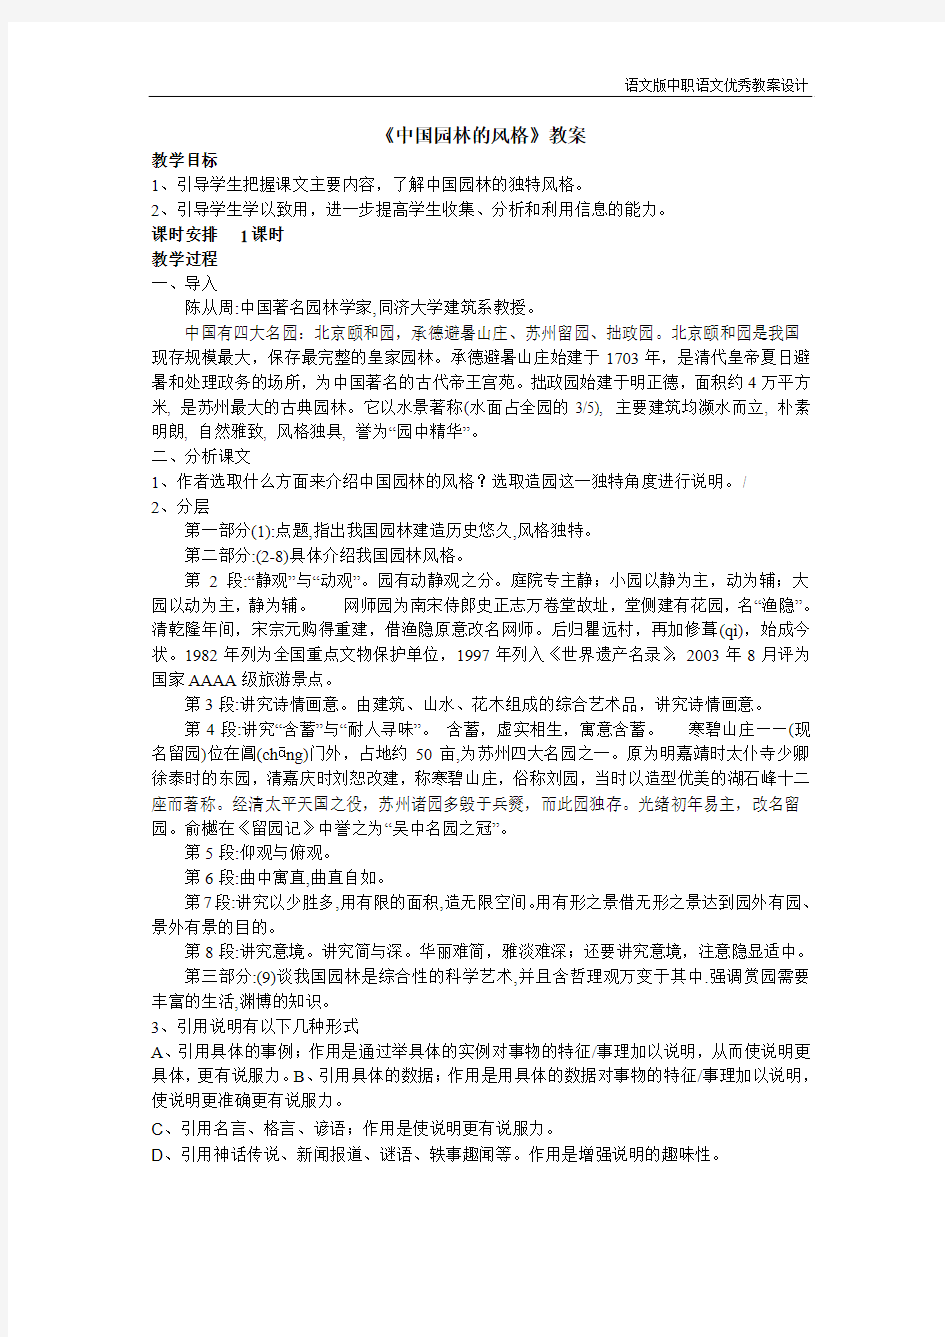 语文版中职语文(基础模块)下册第5课《中国园林的风格》